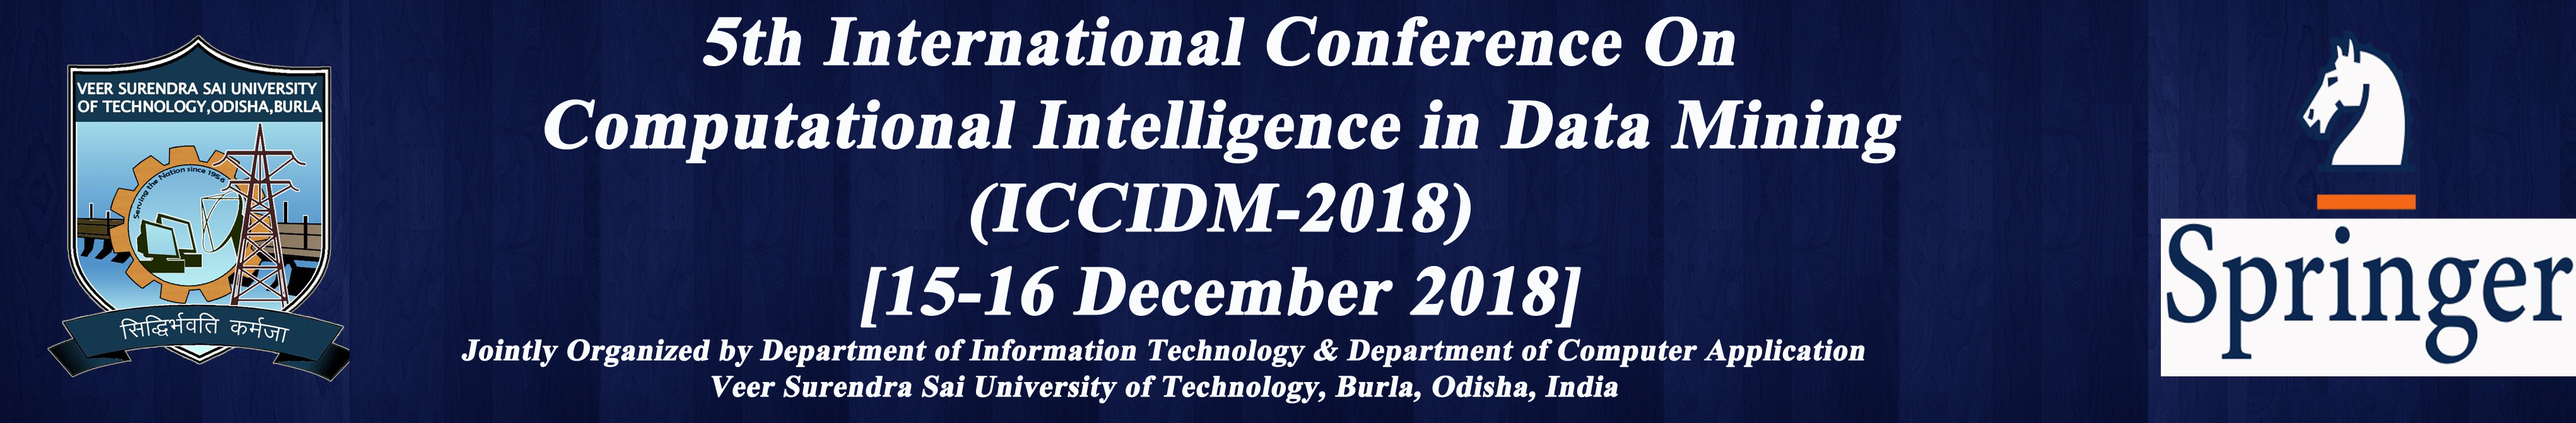 International Conference on Computational Intelligence on Data Mining